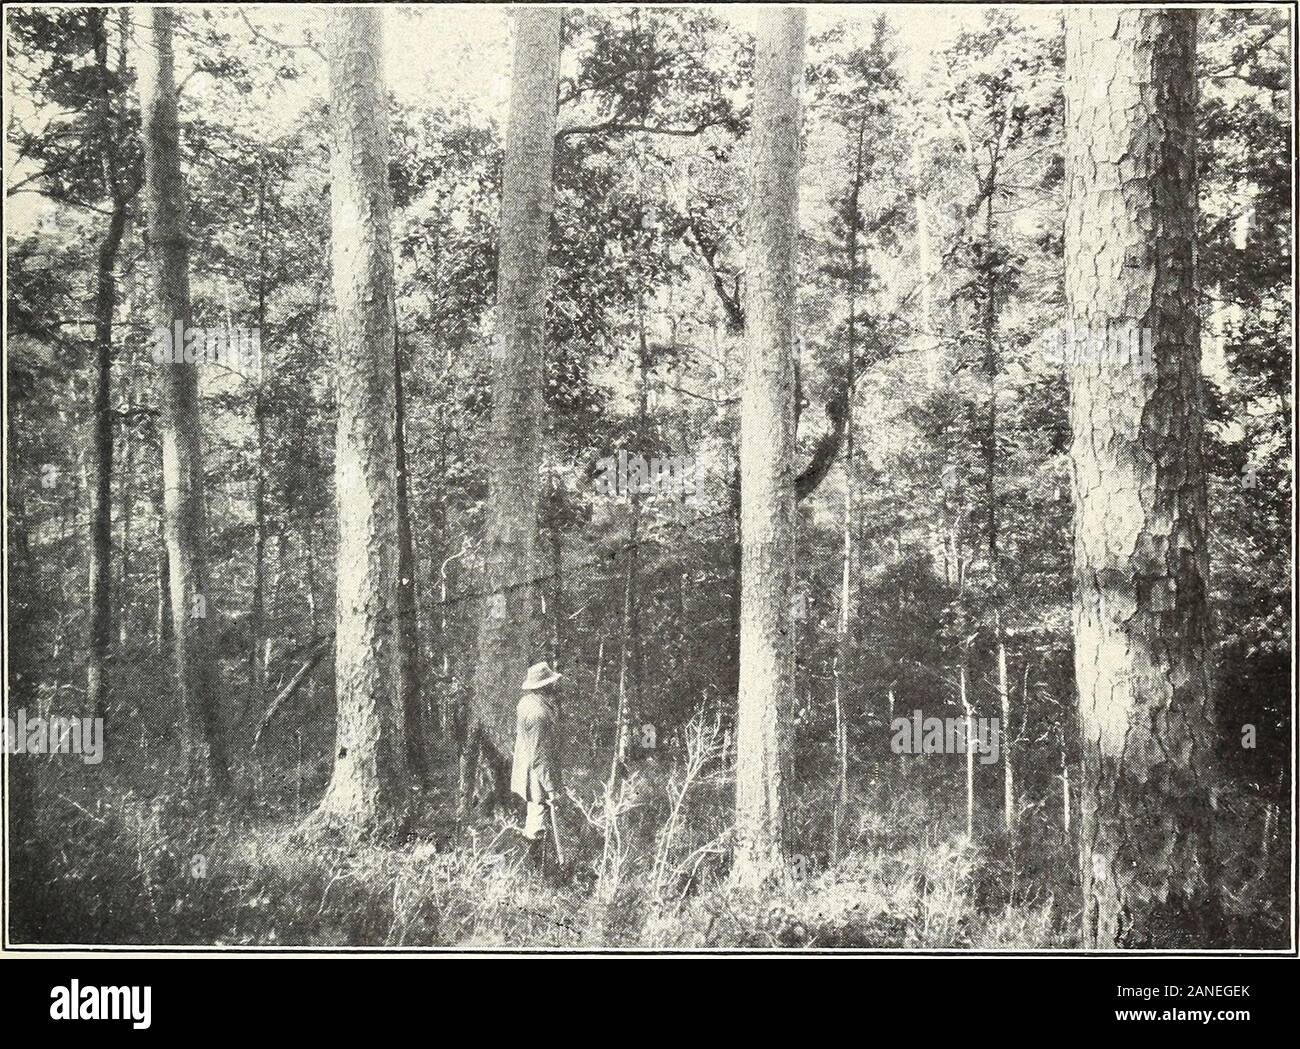 Shortleaf pine: seine wirtschaftliche Bedeutung und Bewirtschaftung der Wälder. F -13191 ein Bild. 1. - Blick durch die Wipfel der Bäume in der Abbildung unten gezeigt. F -13192 ein Bild. 2. - Den unteren Teil der Amtsleitungen. Bäumen 160 Jahre alt, 20 bis 28 Zoll inDiameter, und etwa 110 Meter in der Höhe. Zwei Ansichten EINER GRUPPE VON REIFEN SHORTLEAF PINE TREES, ZEIGT DIE SCHMALE KRONE UND GERADE SAUBER BOLETYPICAL DER ARTEN. Bui. 308, US Abt. der Landwirtschaft. Platte II. Stockfoto